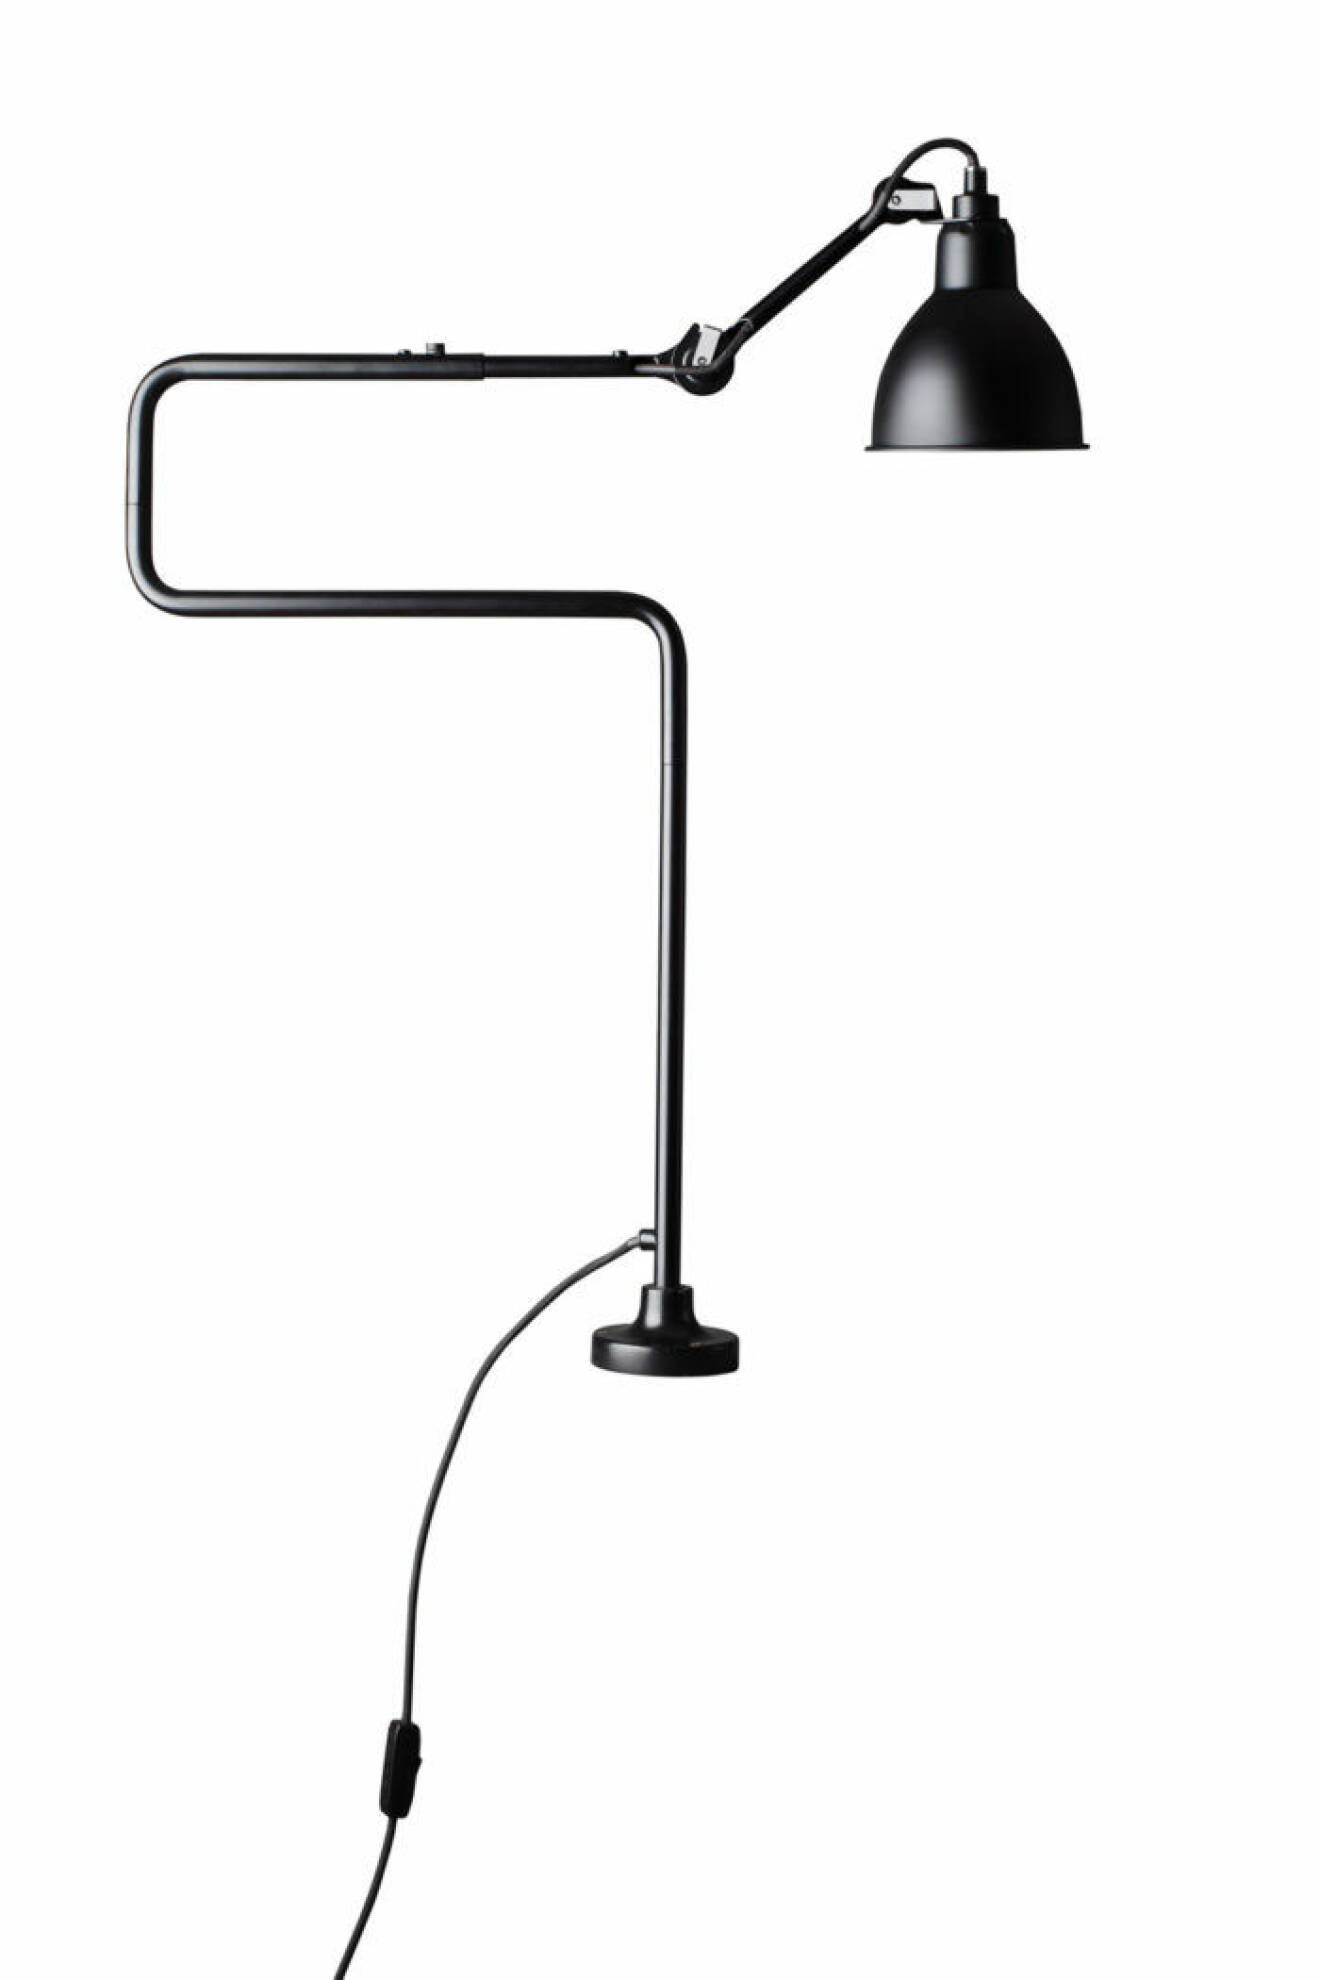 Lampe Gras, ­designad 1921 av Bernard Albin Gras, finns nu åter i produktion. En arkitektlampa i svart lack som antingen spänns fast i bordsskivan eller står på fot.  No 211-311 kostar 4 740 kr, Gubi.